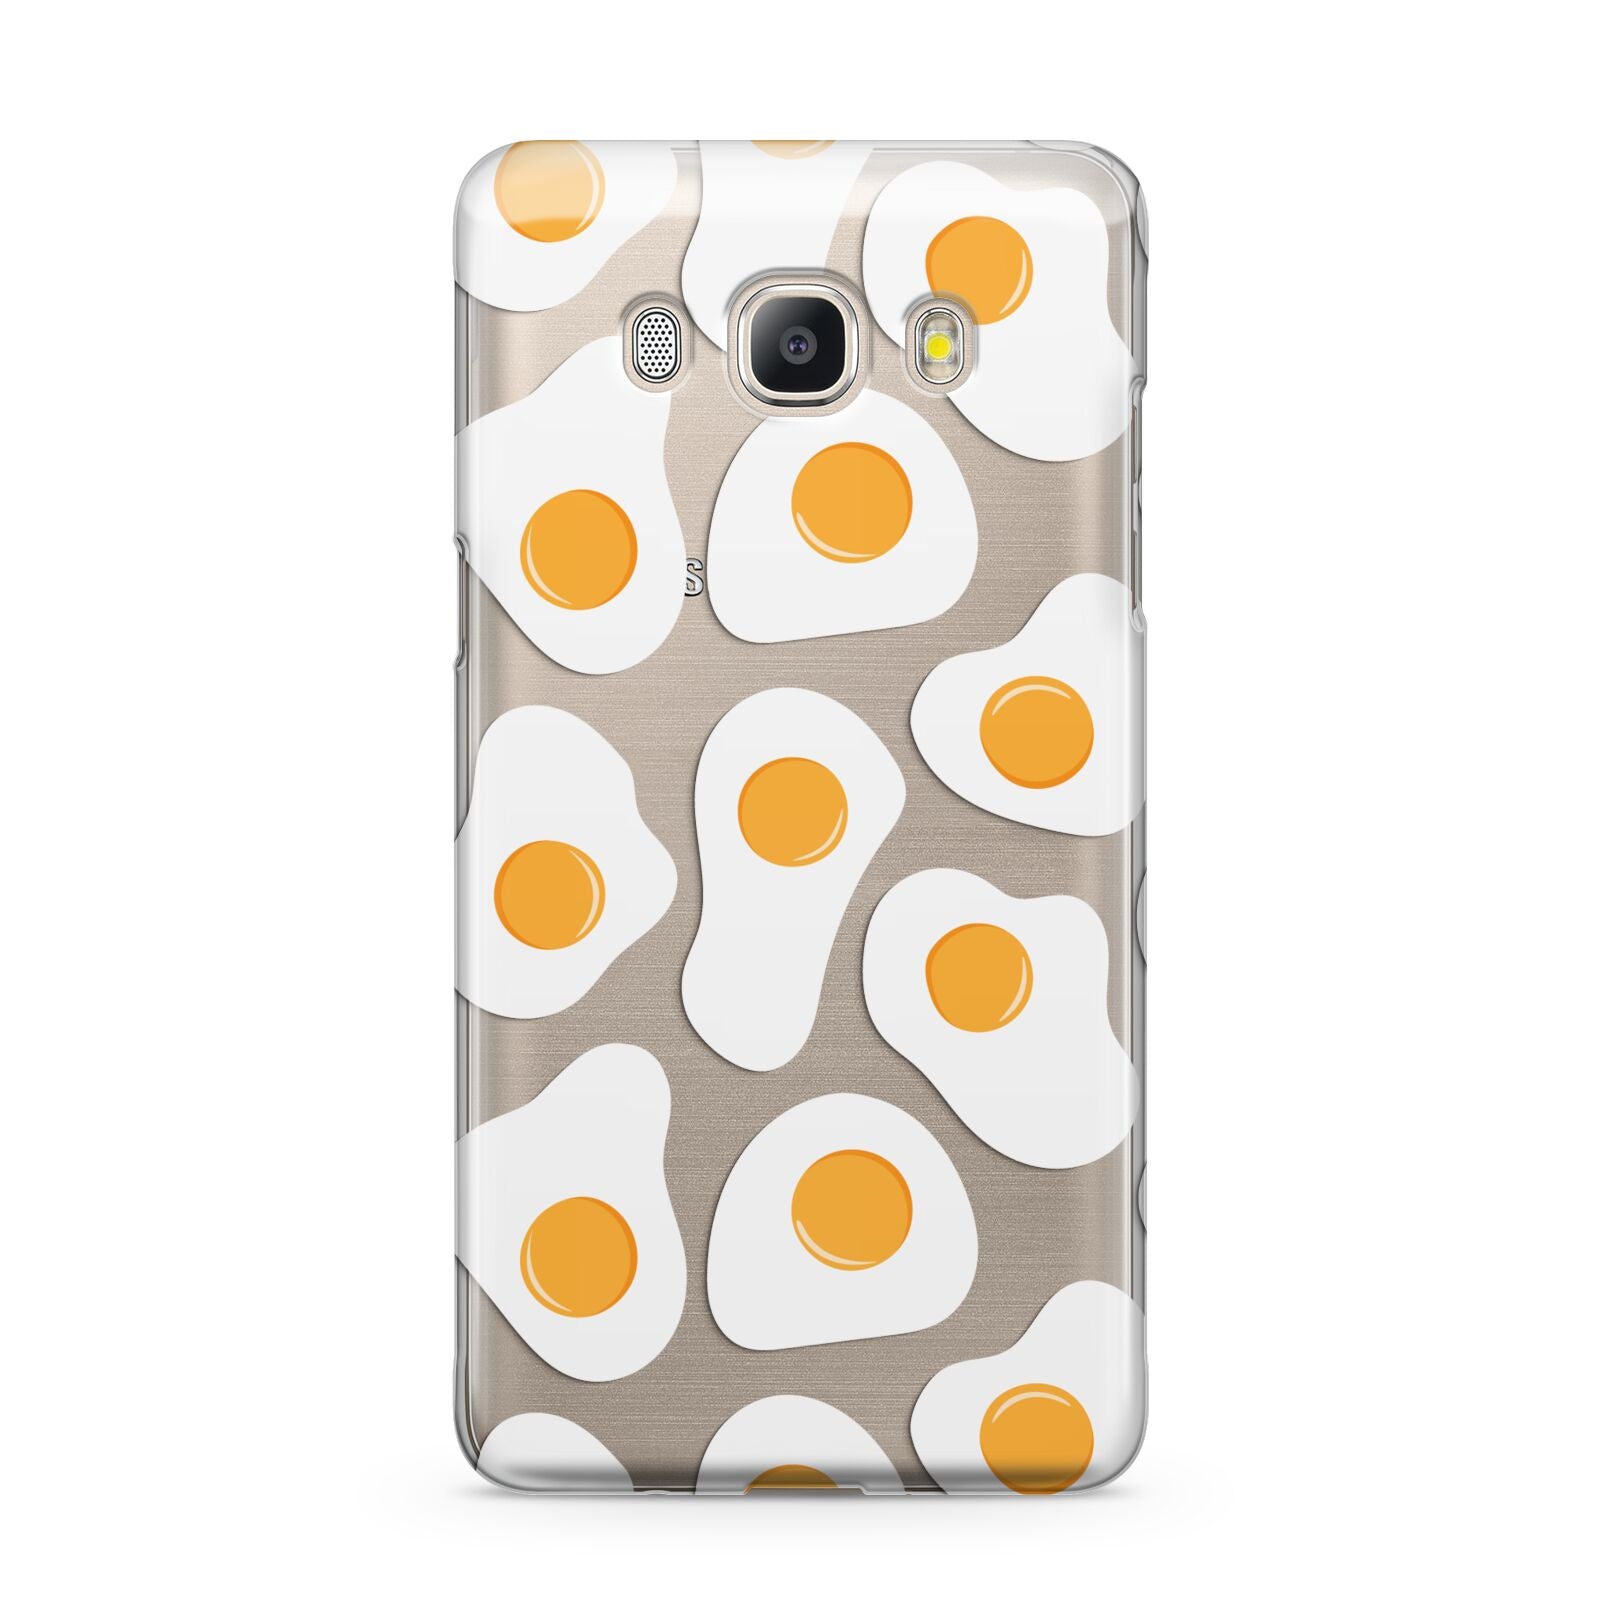 Fried Egg Samsung Galaxy J5 2016 Case